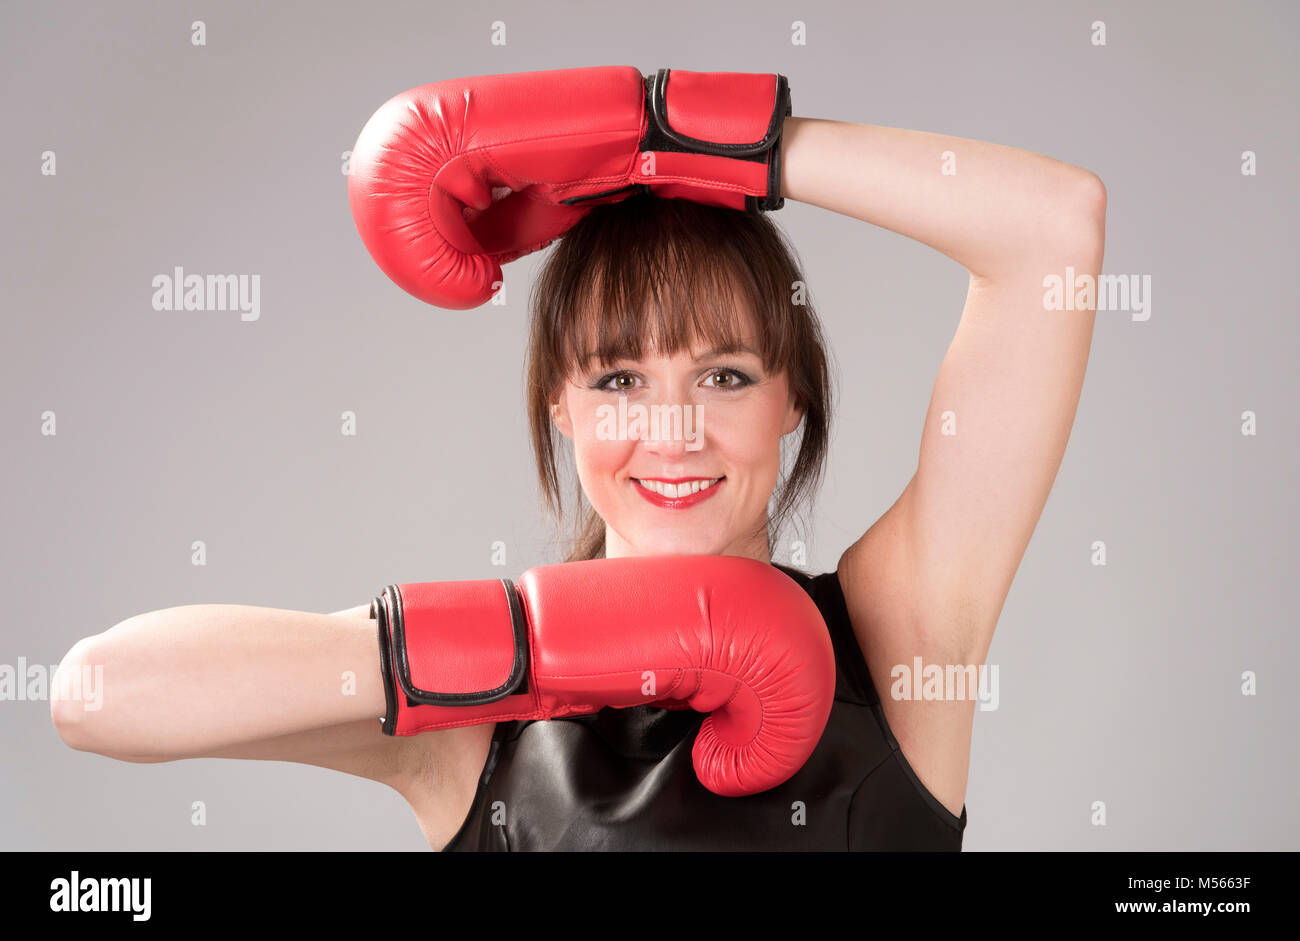 Femme portant un haut de cuir noir et rouge gants de boxe Banque D'Images